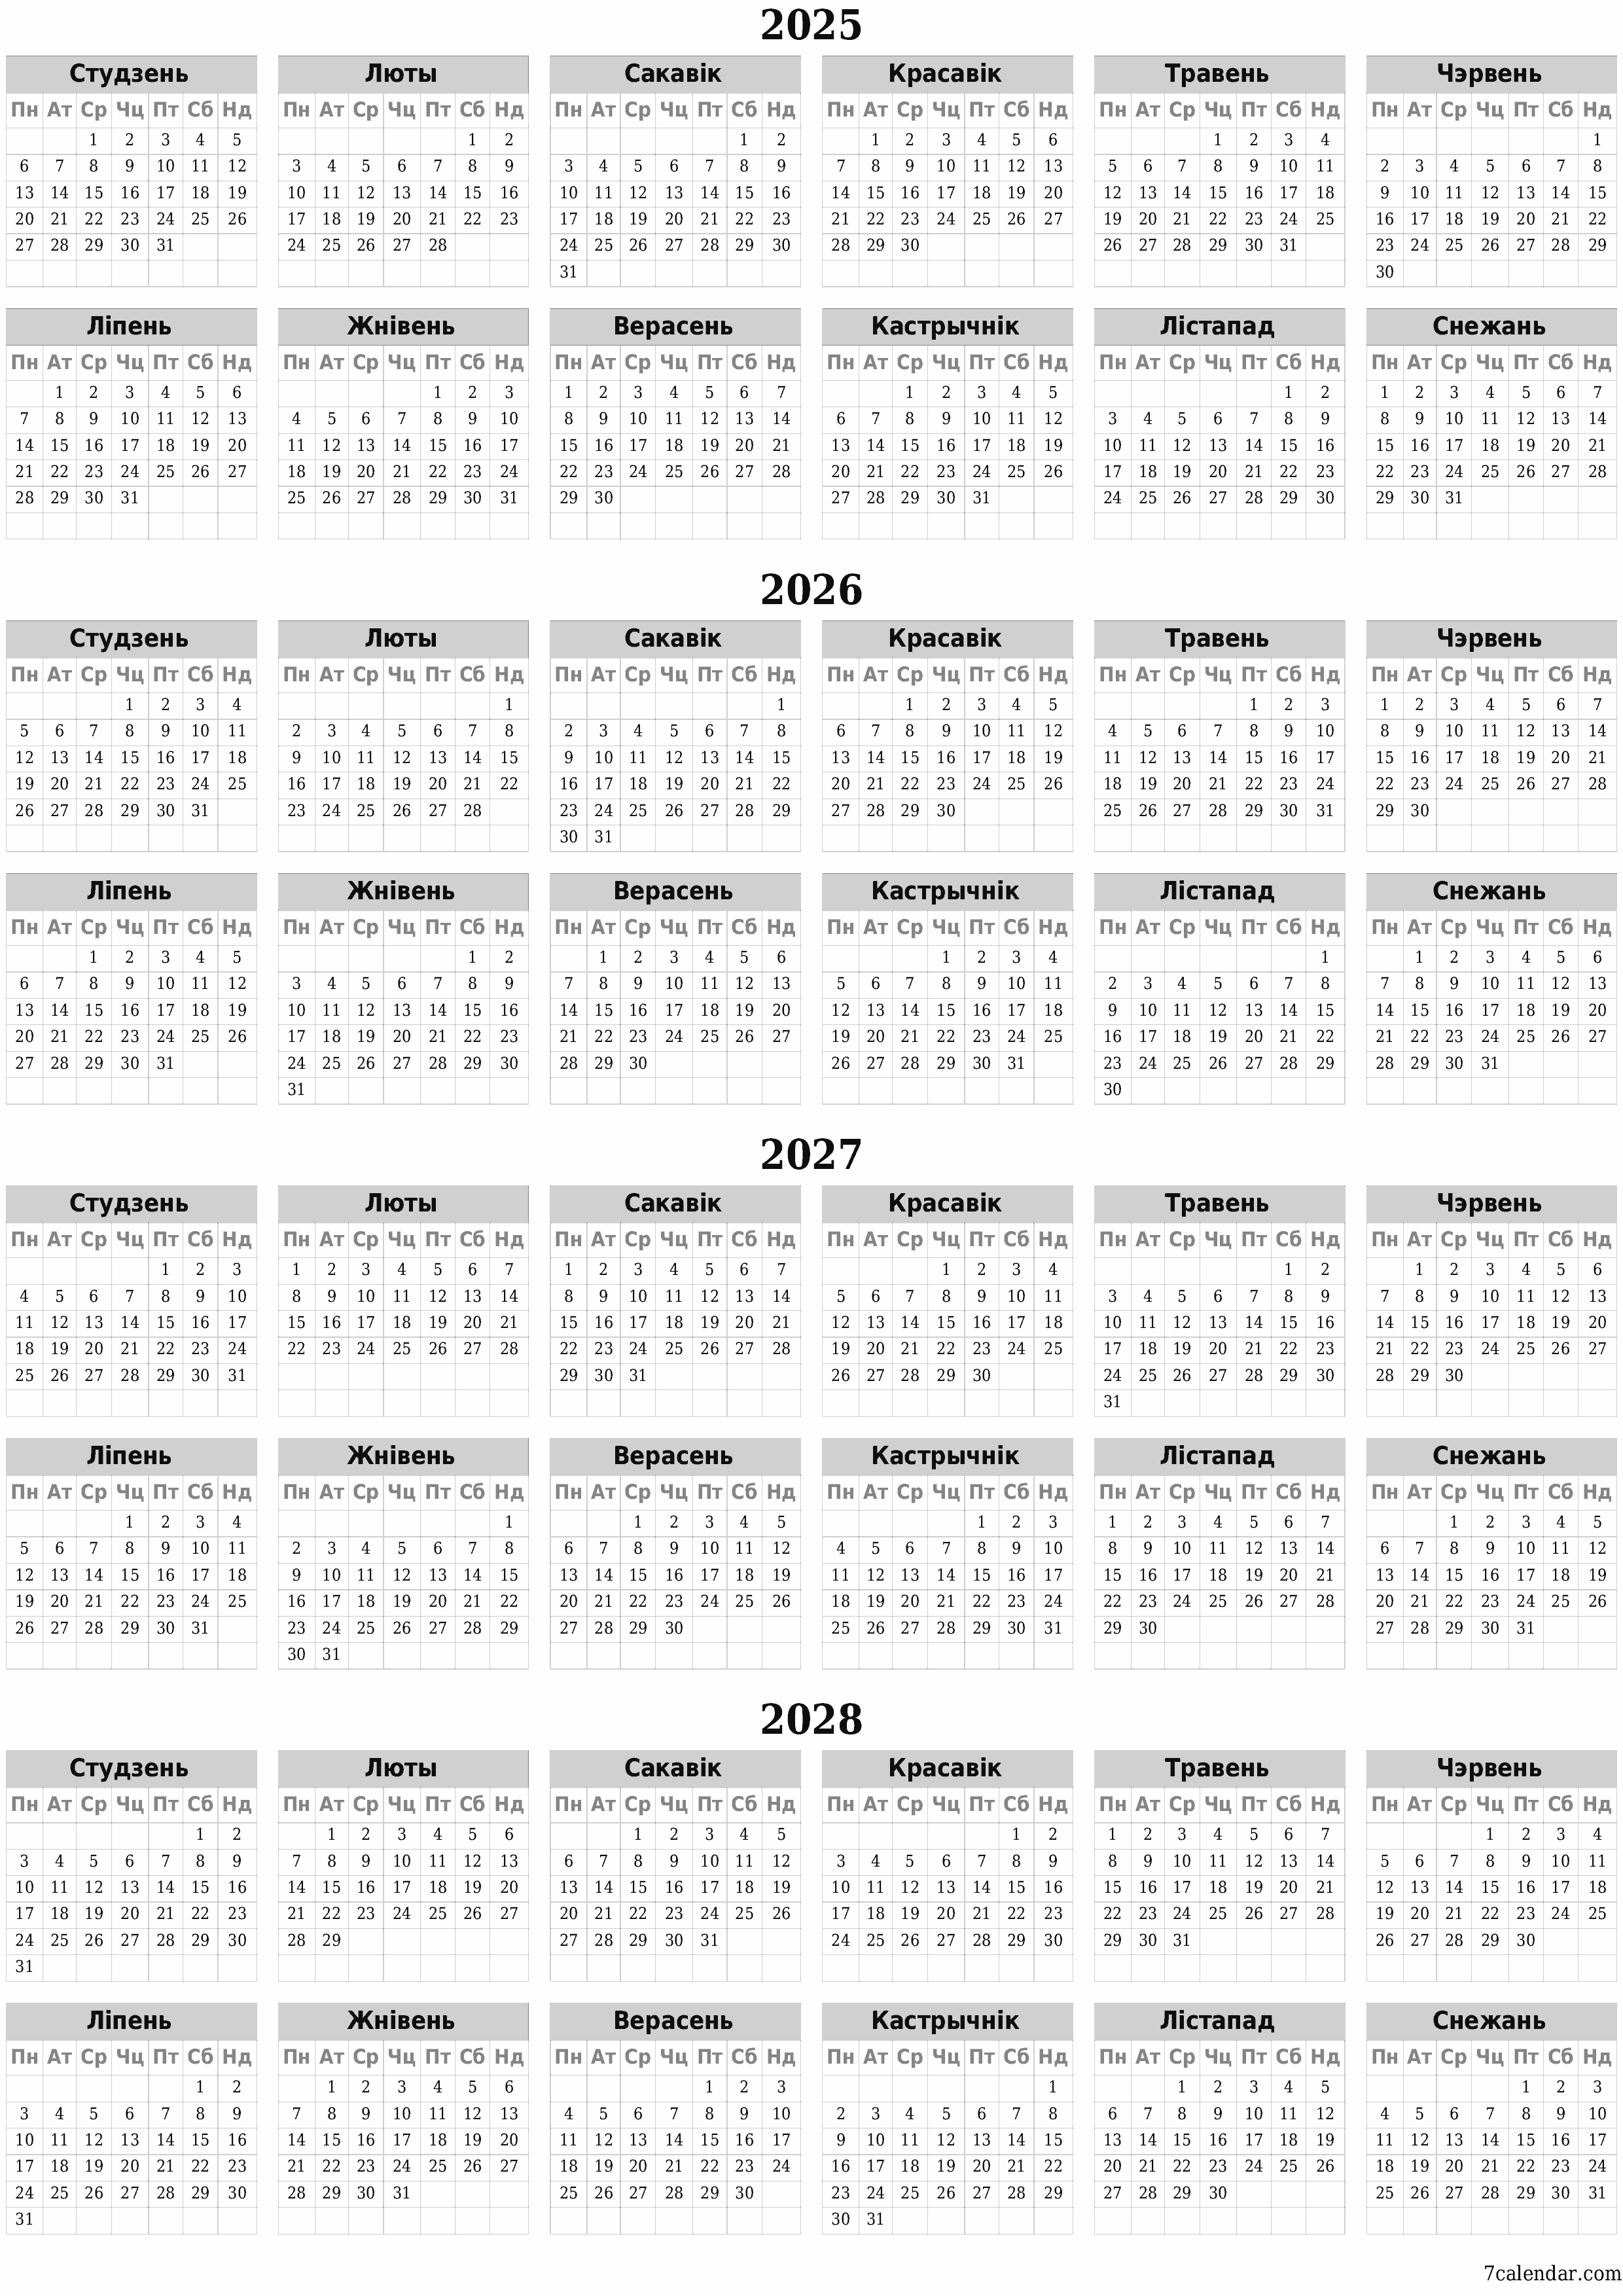  для друку насценны шаблон календара бясплатны вертыкальны Штогадовы каляндар Люты (Лют) 2025